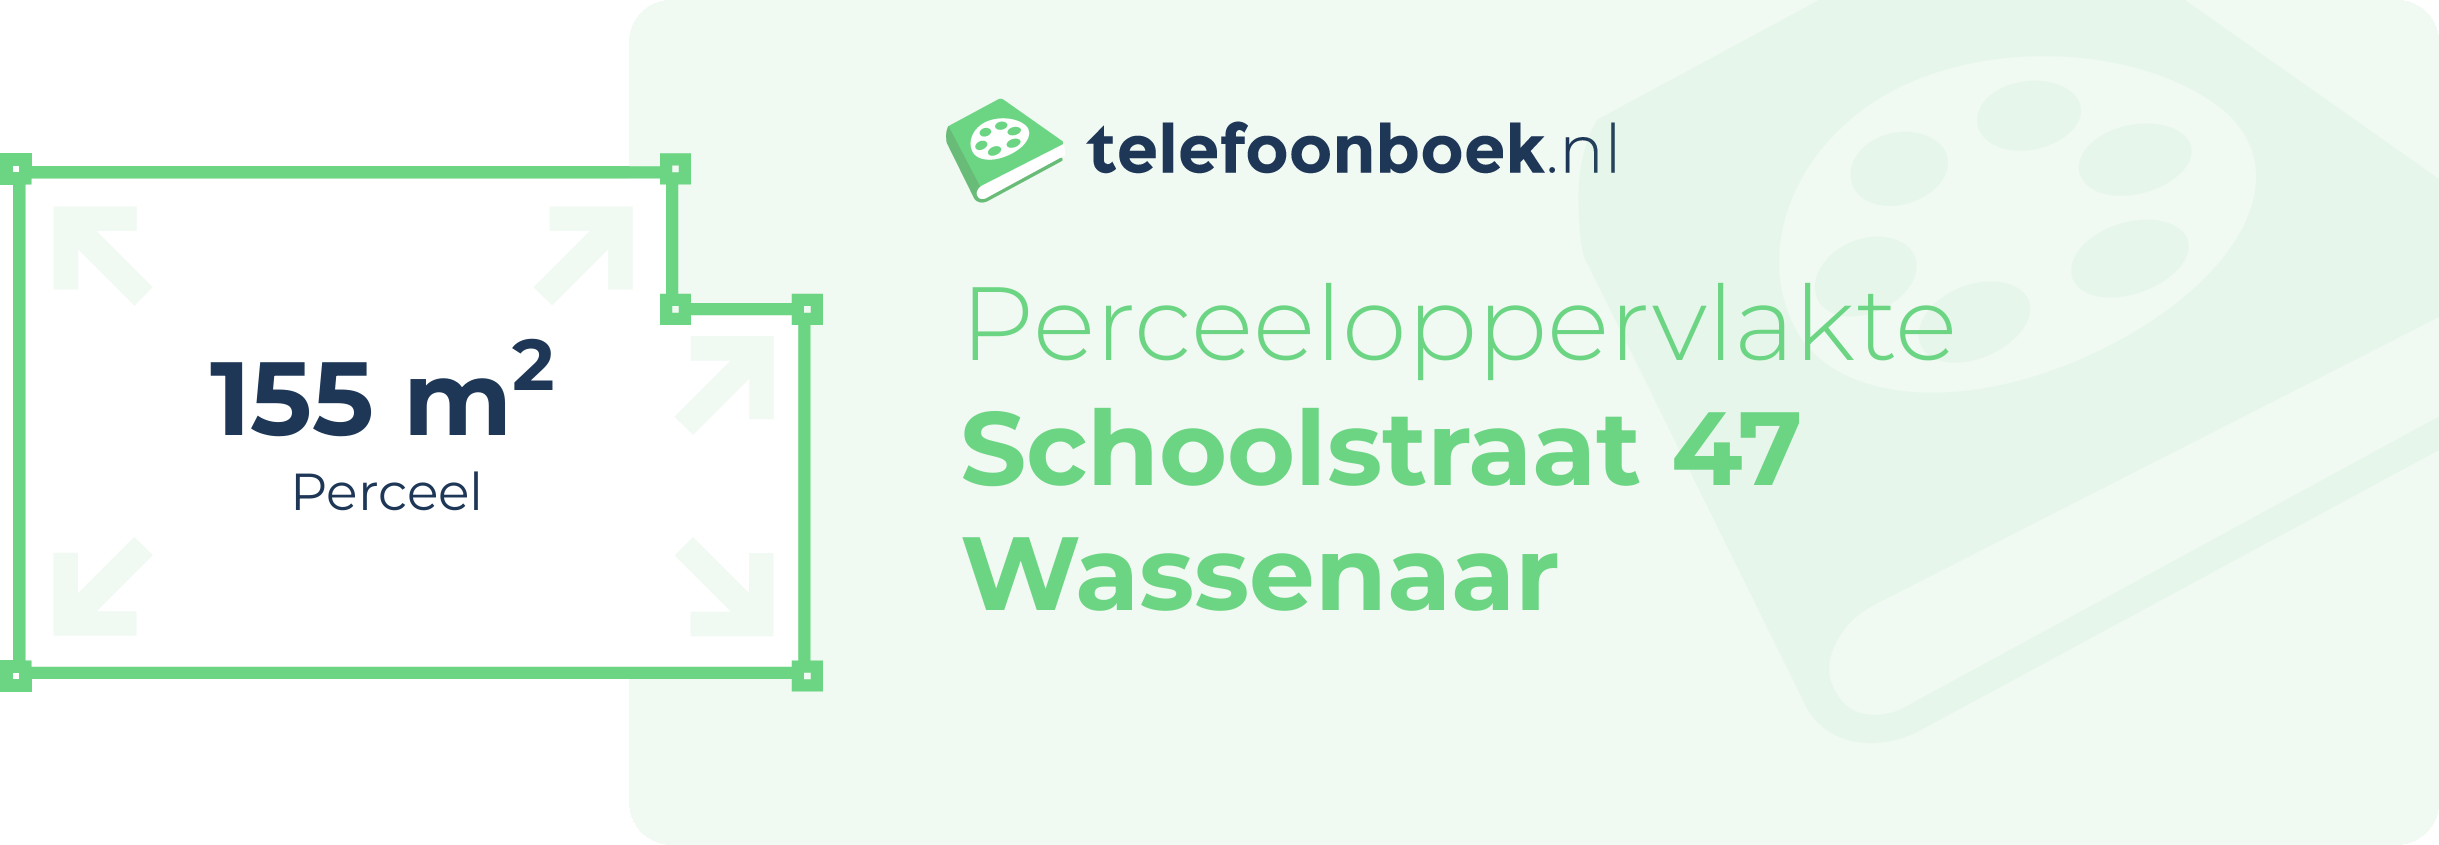 Perceeloppervlakte Schoolstraat 47 Wassenaar